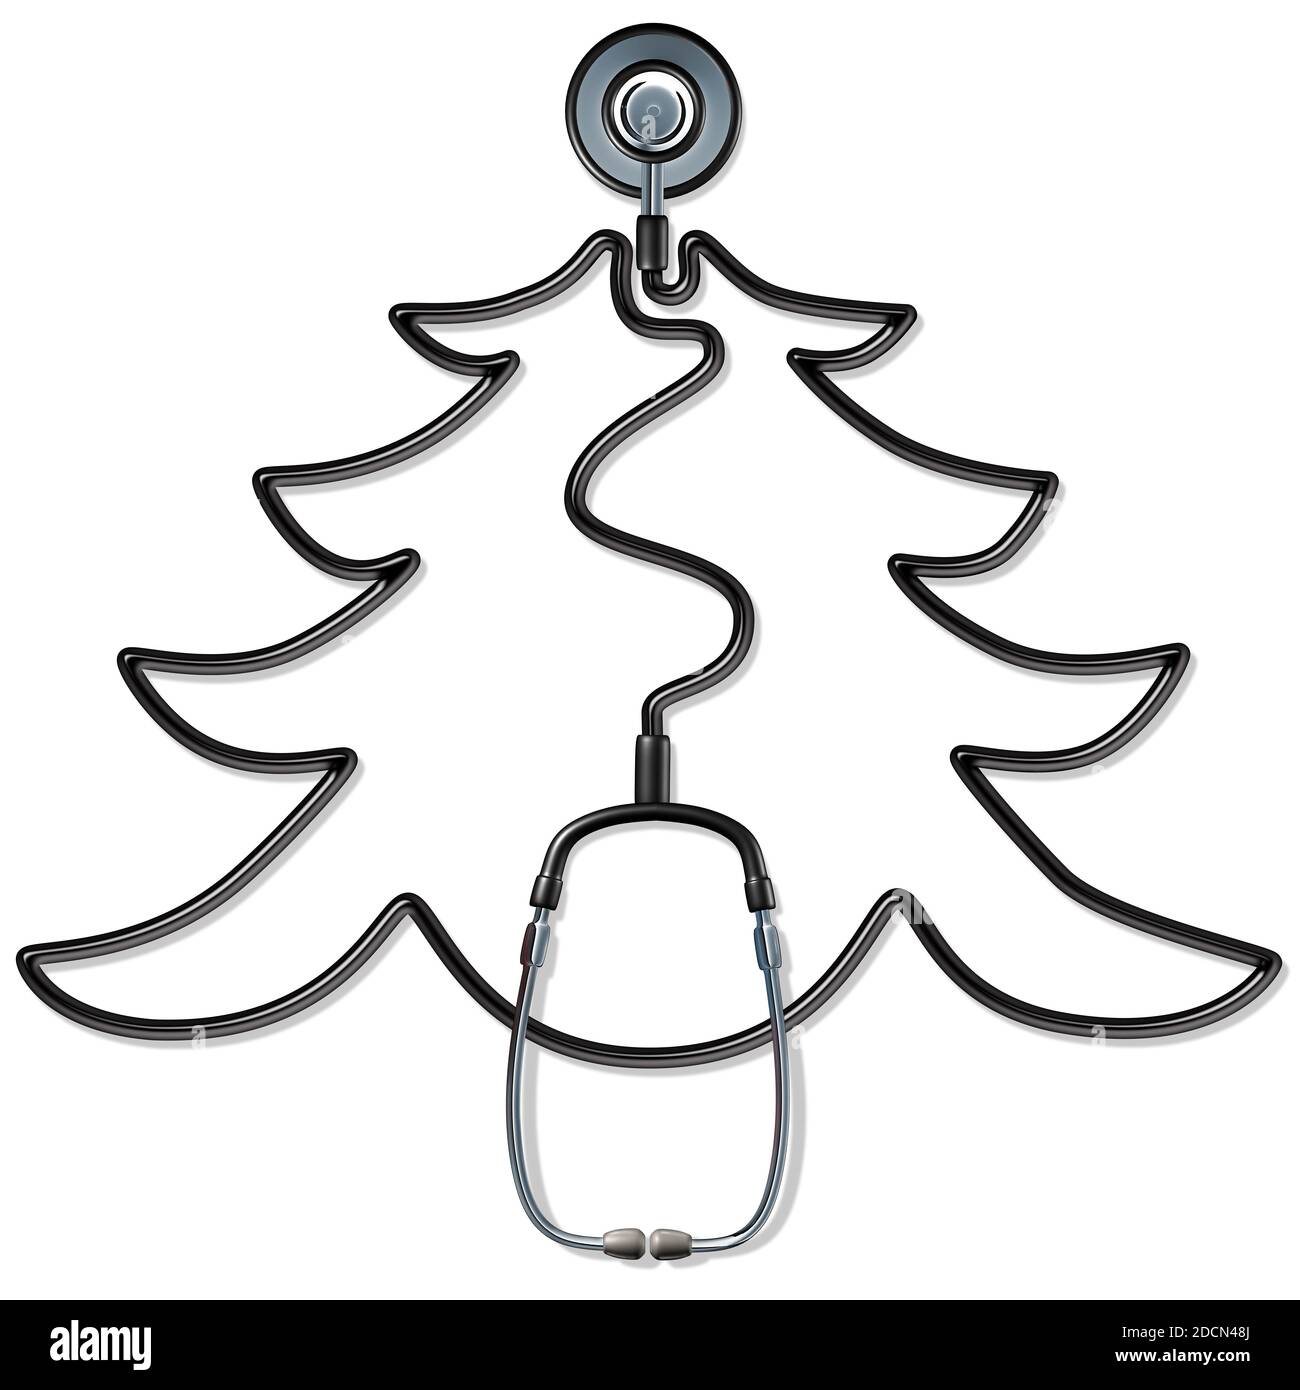 Medicina di festa e la cura di stagione di Natale come stetoscopio medico modellato come un pino per l'apprezzamento di sanità di inverno. Foto Stock